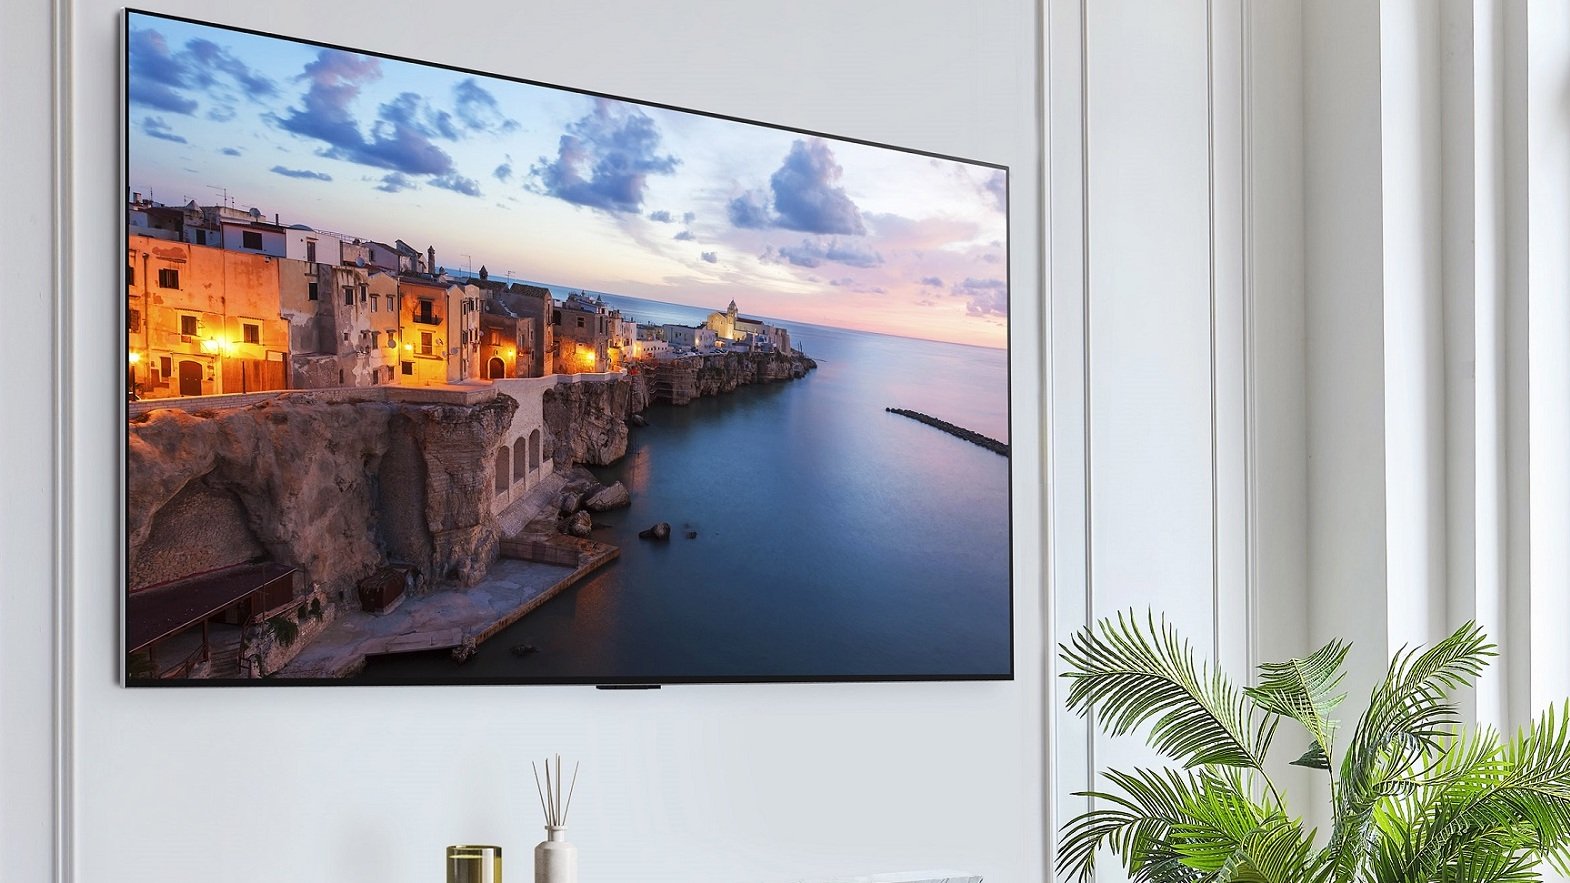 Un panneau LG G3 OLED TV accroché au mur dans un salon